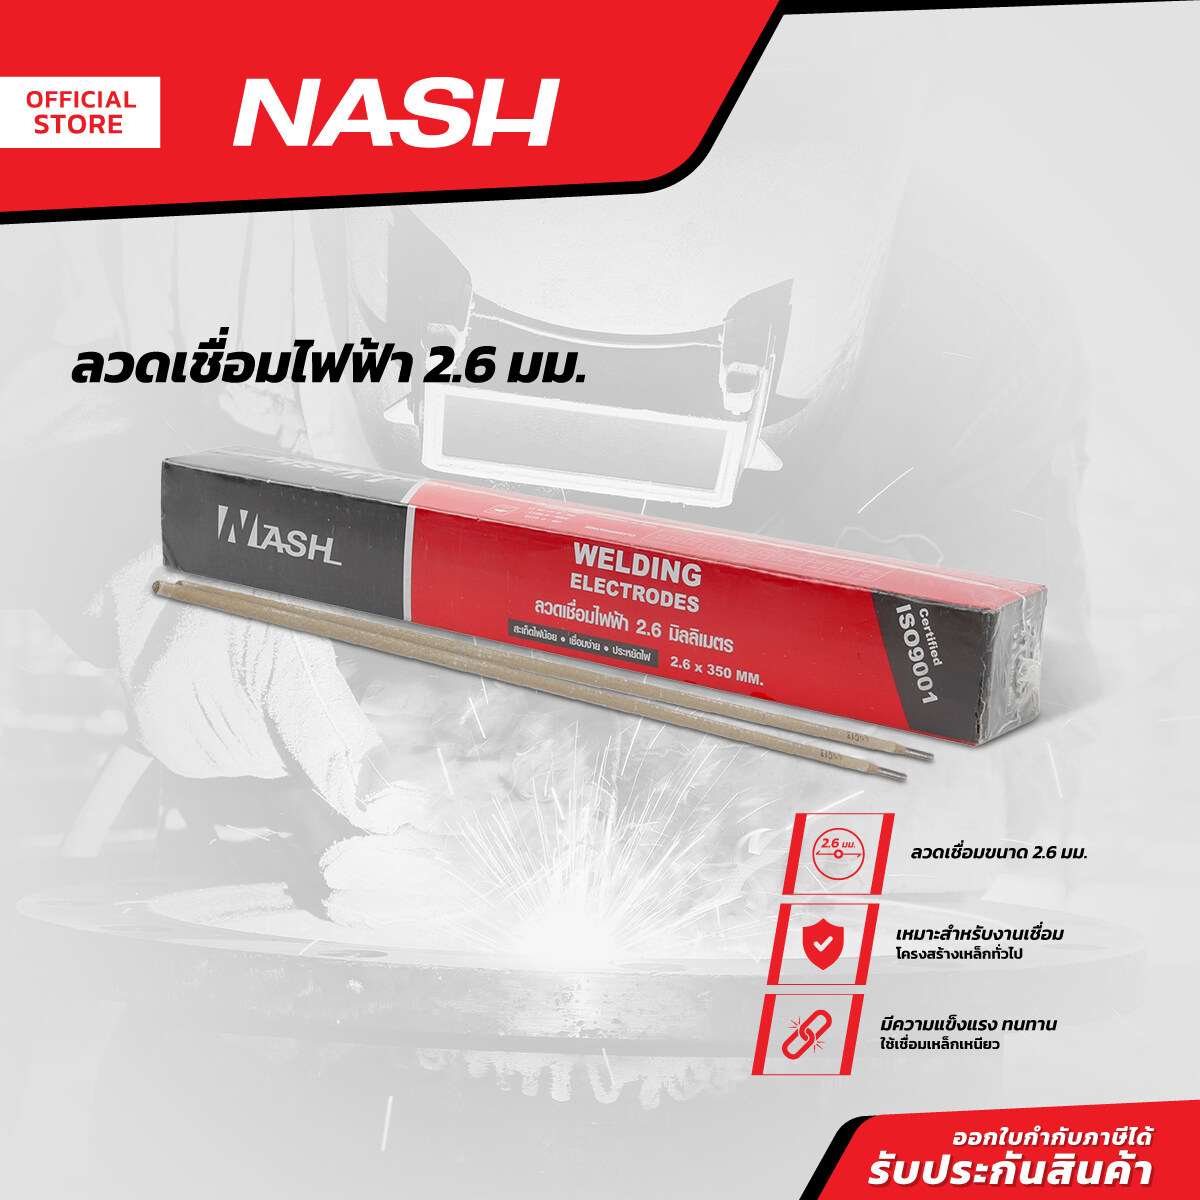 NASH ลวดเชื่อมไฟฟ้า 2.6 มม. |ZWA|